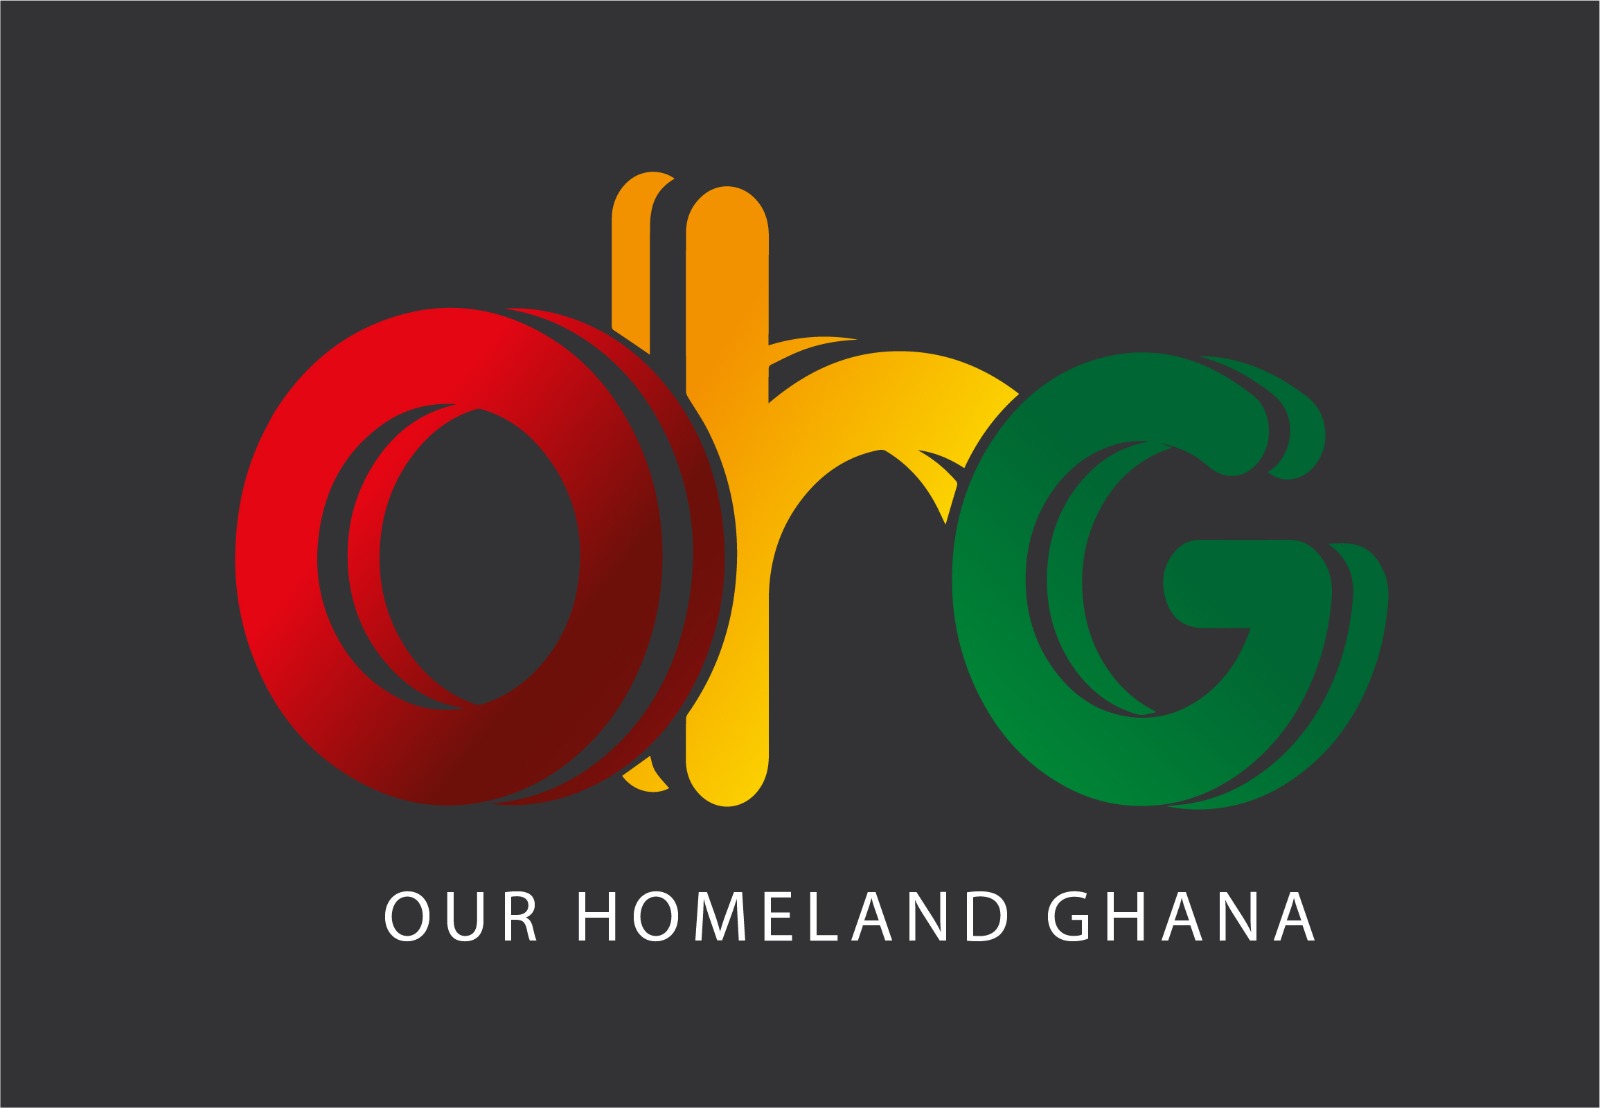 Our HomeLand Ghana